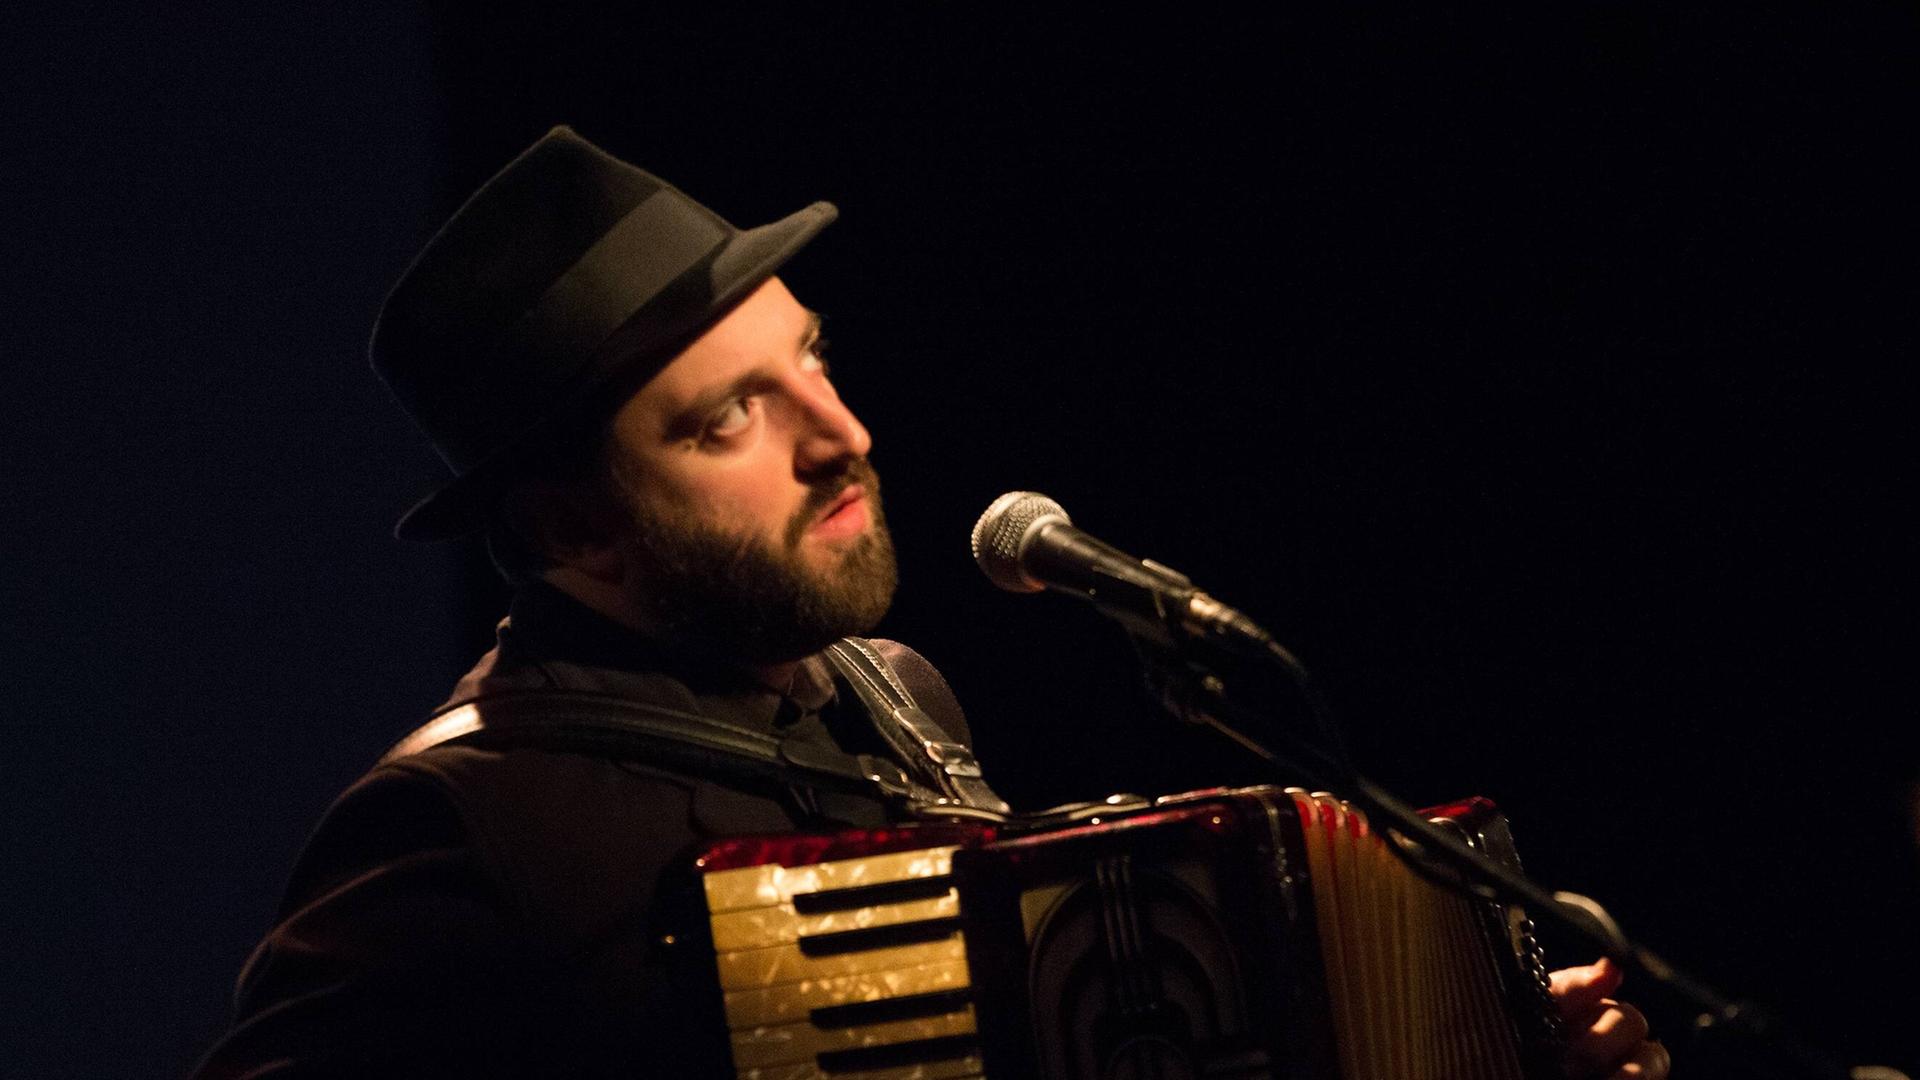 Daniel Kahn mit Hut spielt Akkordeon und singt auf einer Bühne mit Mikrofon.